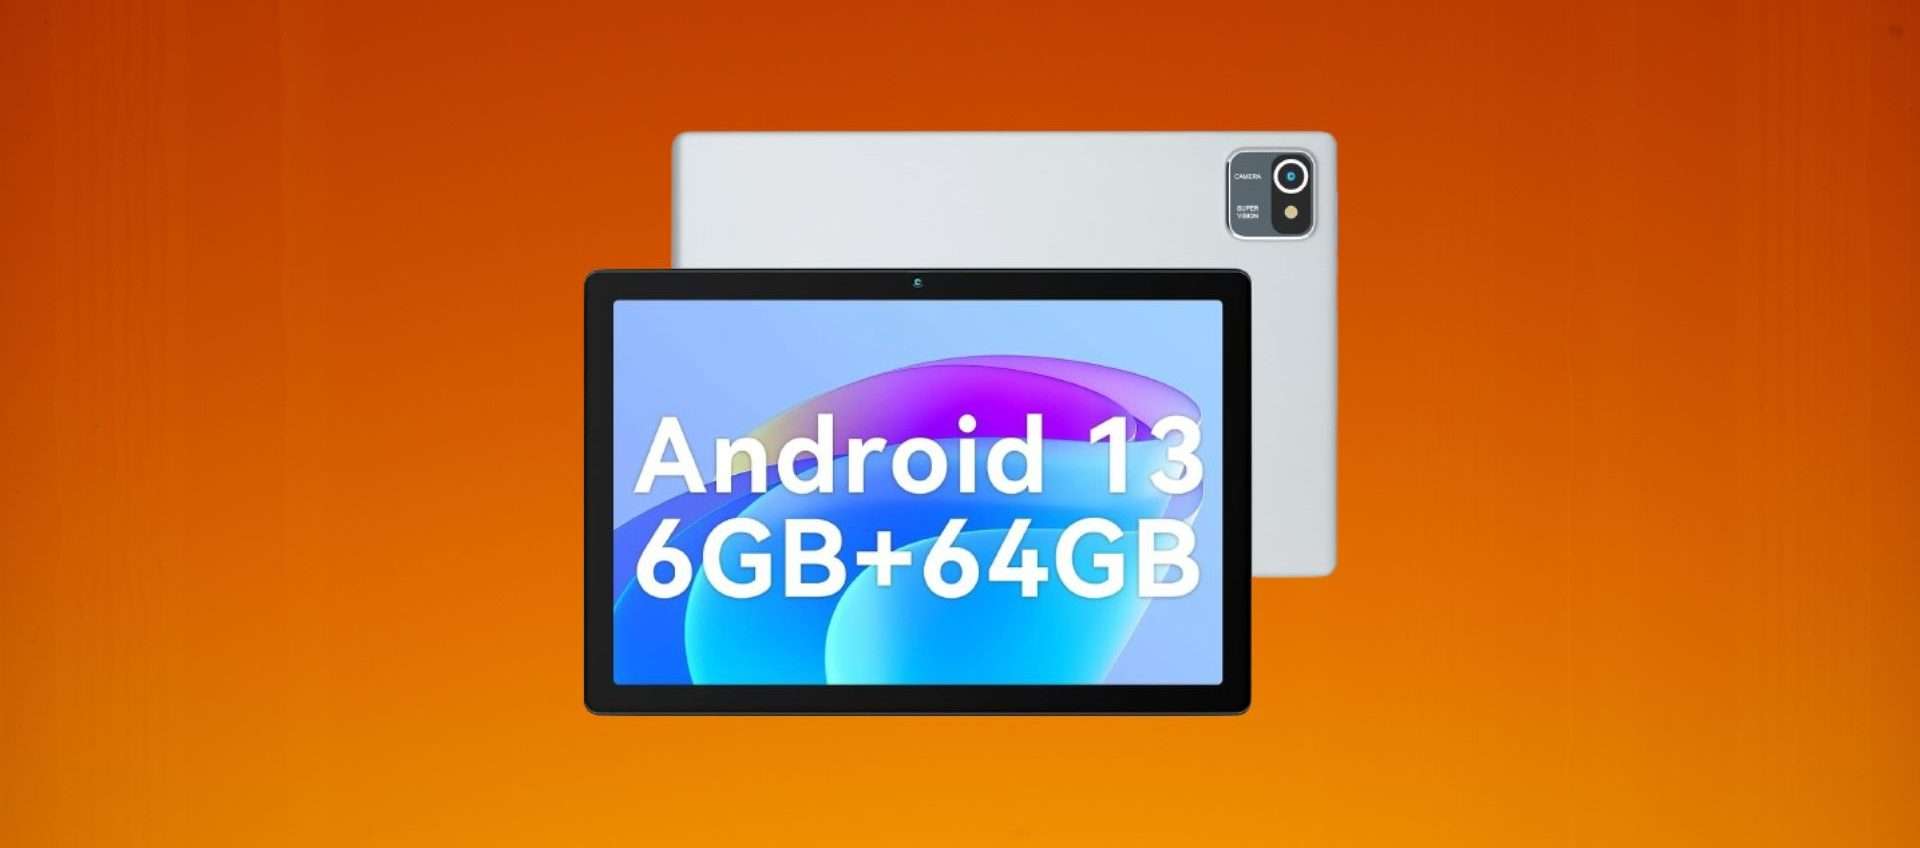 Questo tablet con Android 13 è regalato: su Amazon a meno di 67€ (-50%)